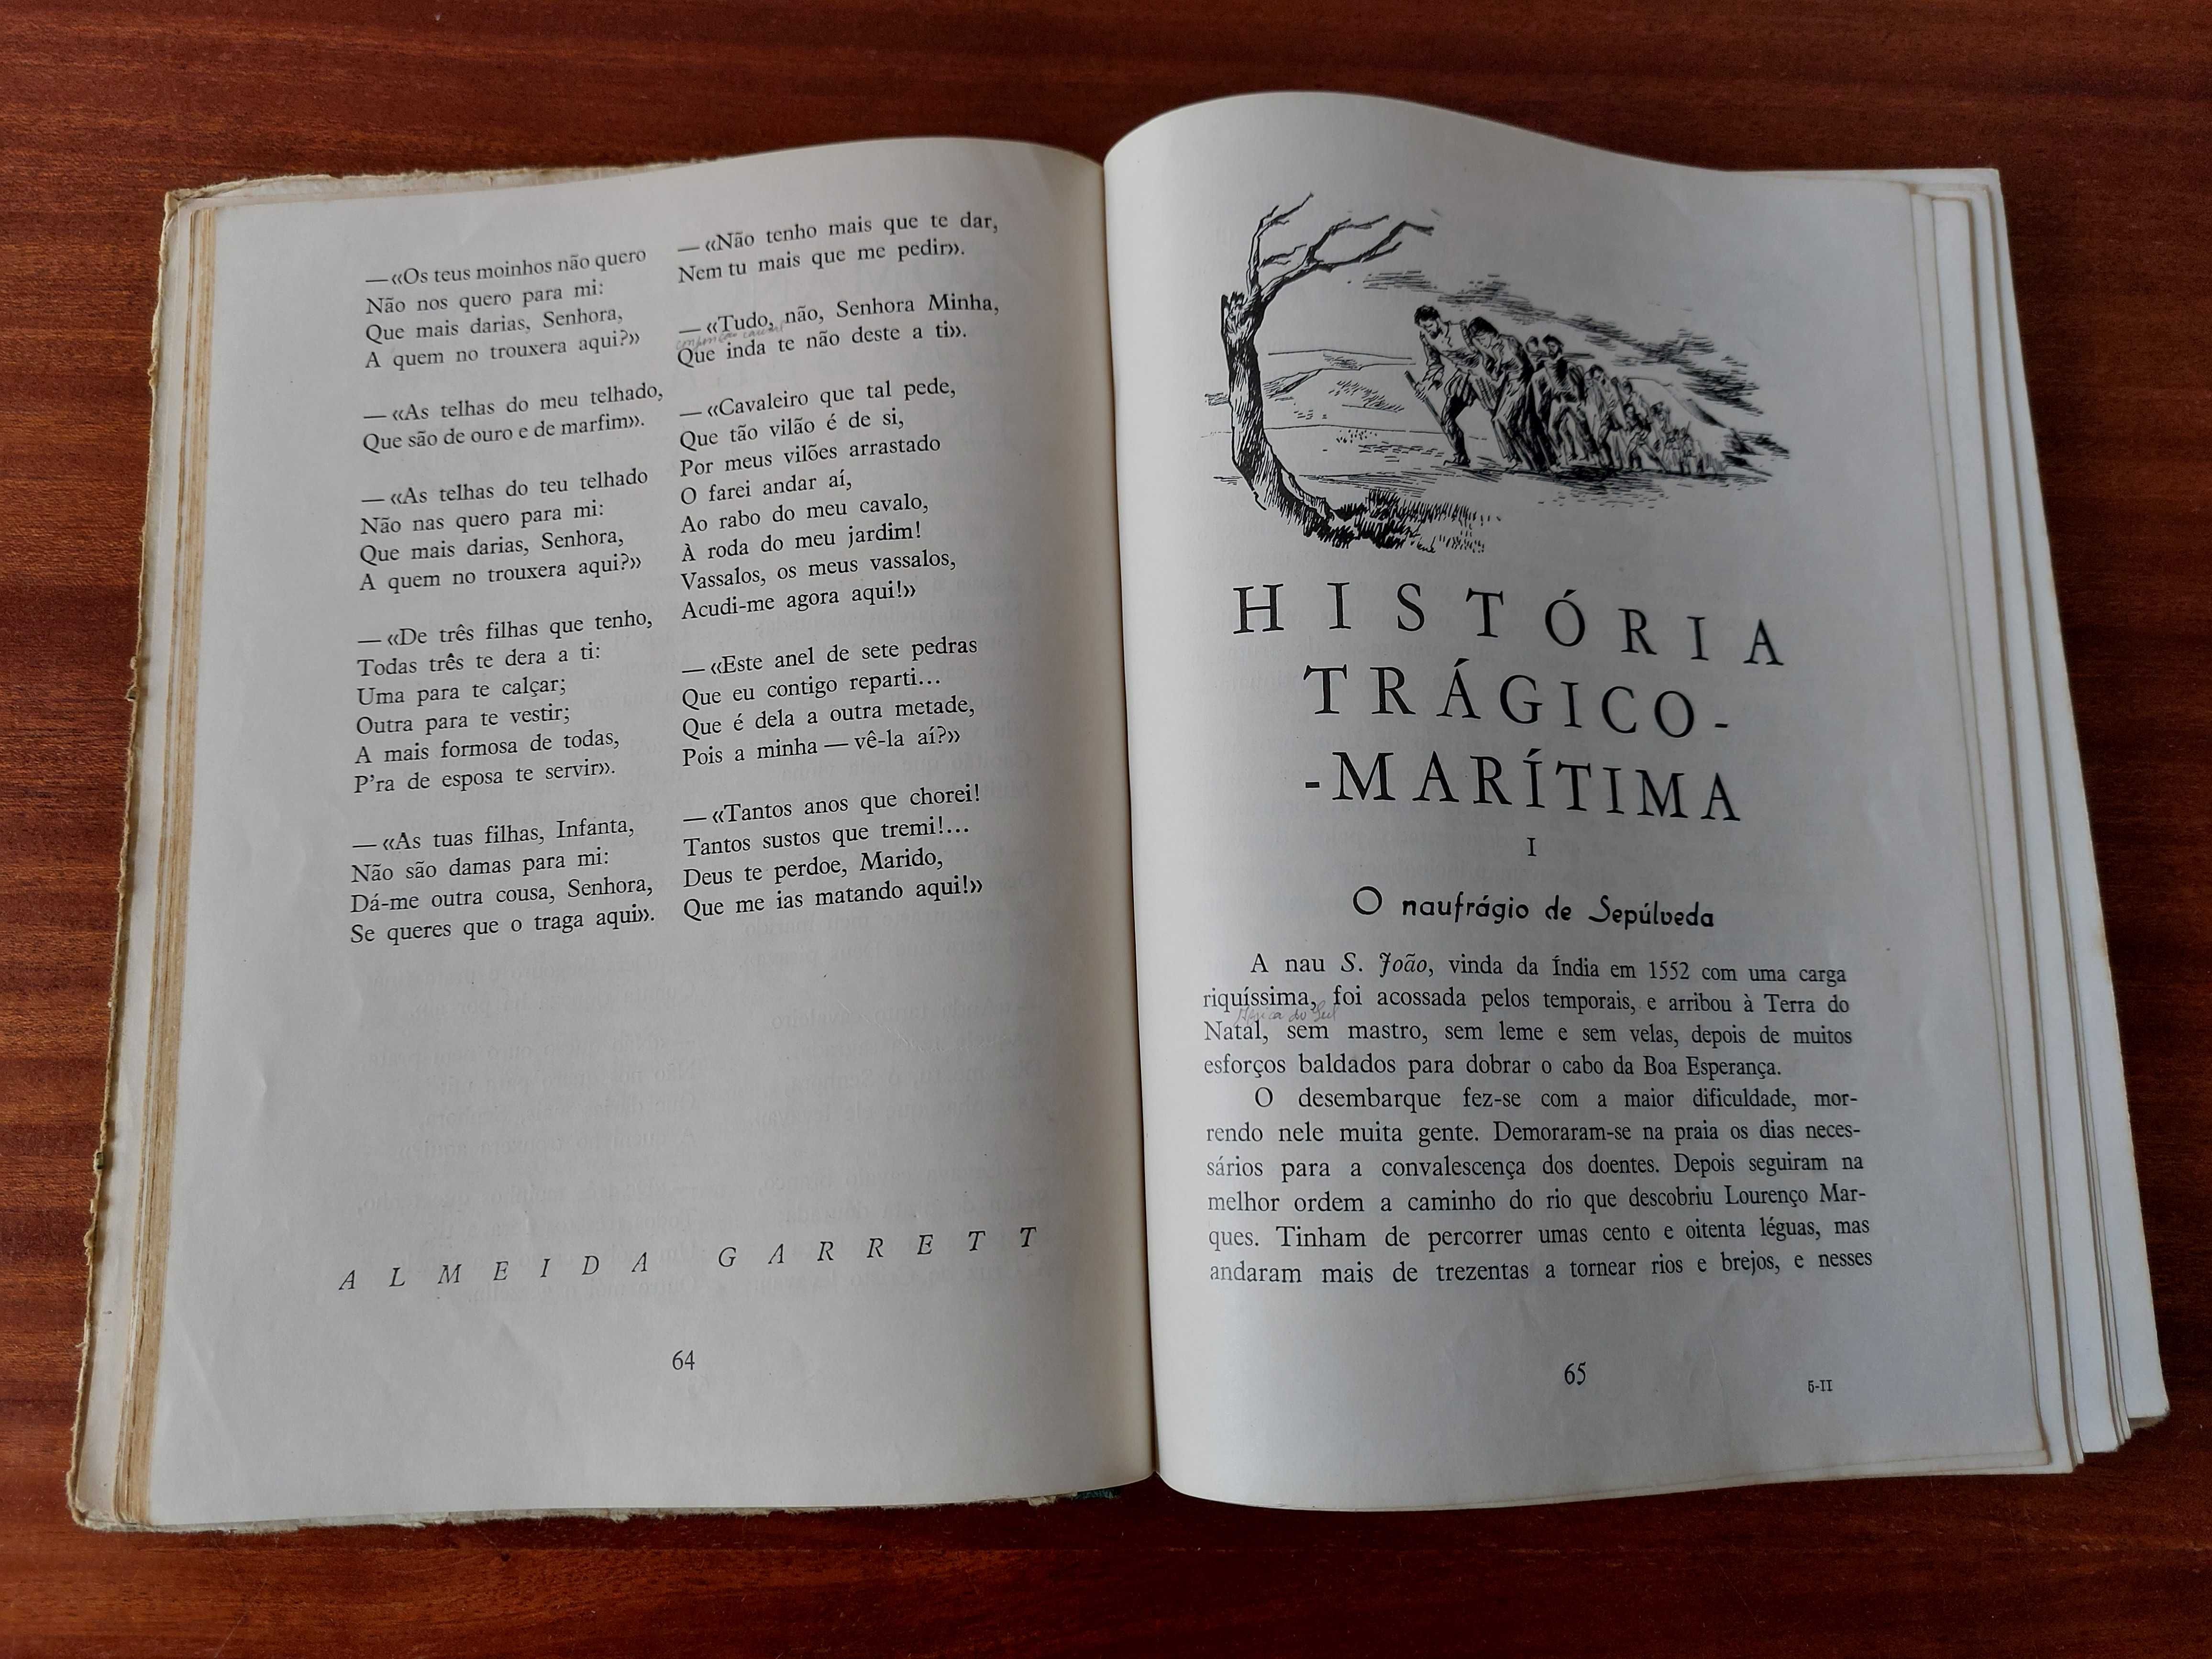 Livro Mar Alto (volume II) - Virgilio Couto